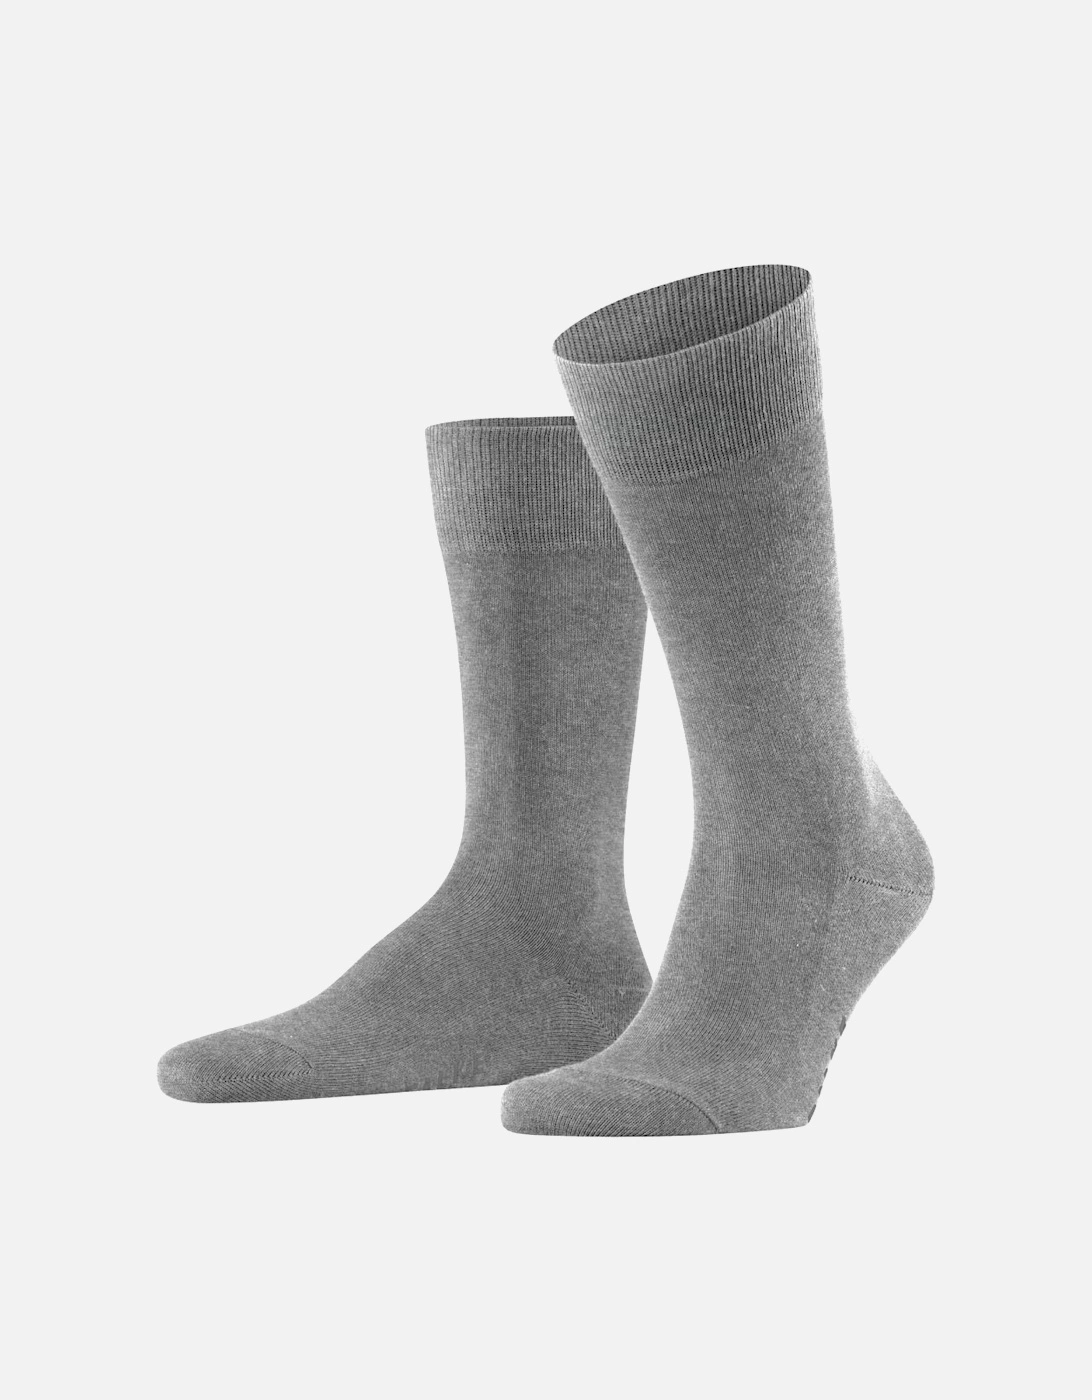 Family Men's Socks, 2 of 1